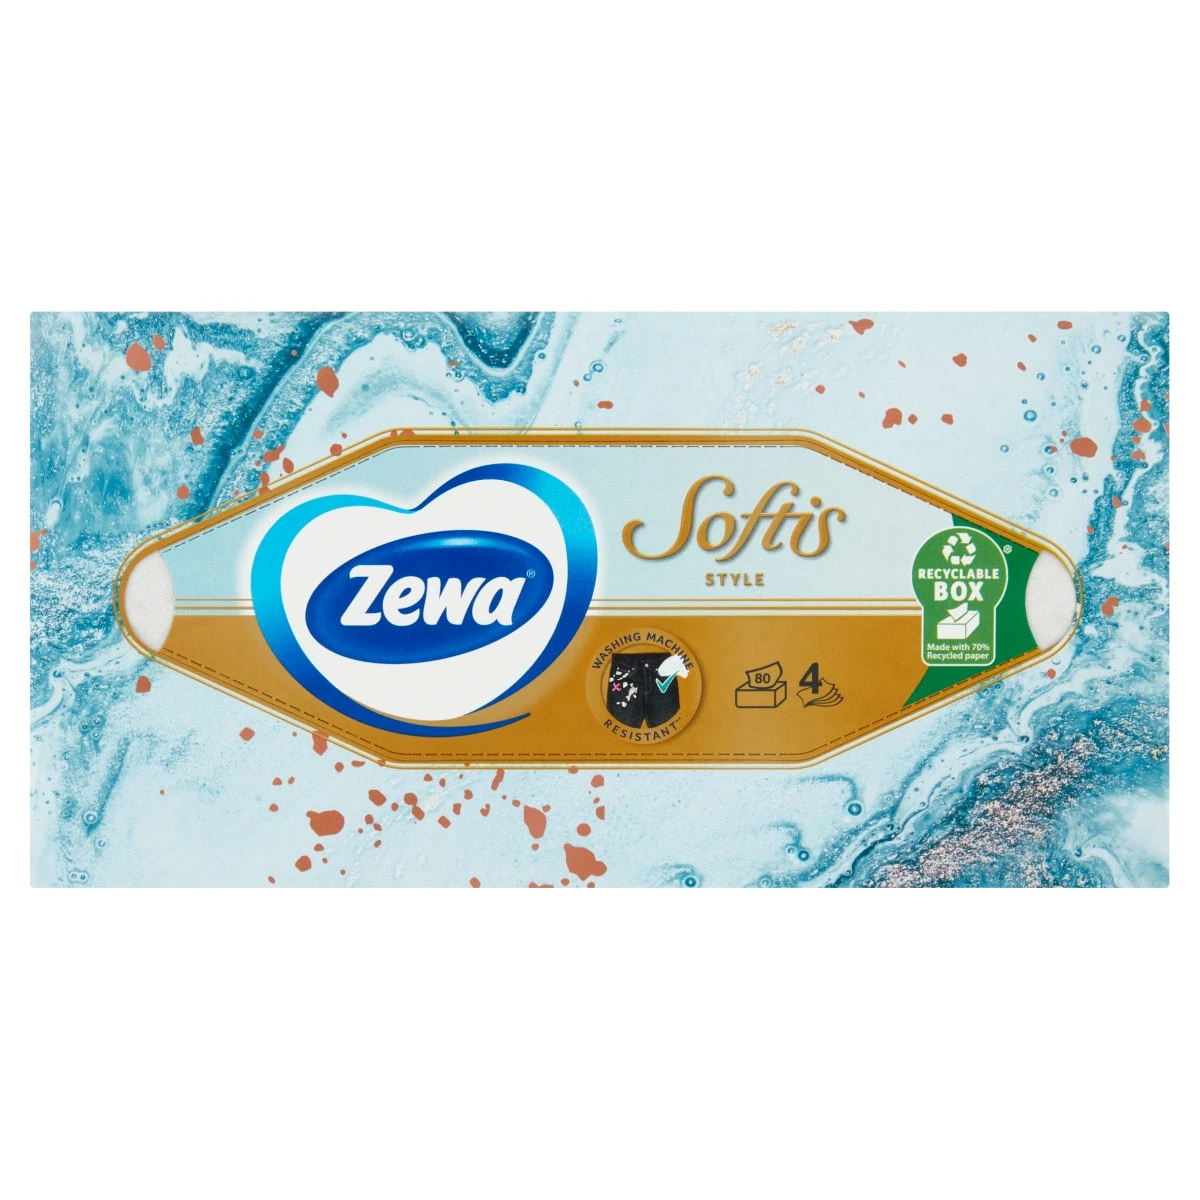 Zewa Softis Style dobozos illatmentes papír zsebkendő 4 rétegű 80 db